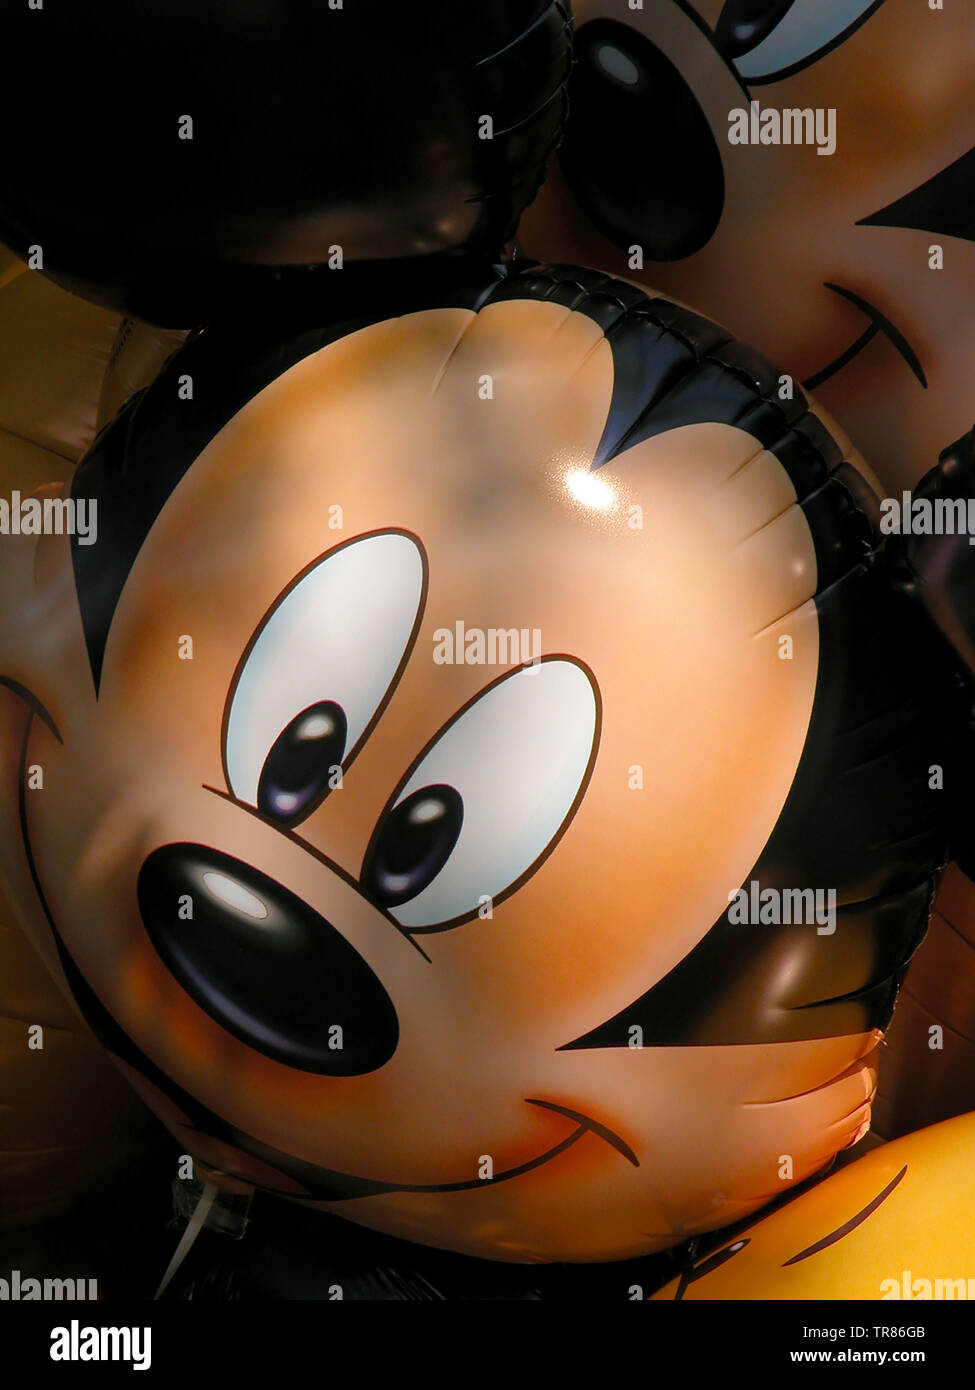 Un ballon avec le visage de personnage de Mickey Mouse, Main Street USA, Parc Disneyland, Paris, France Banque D'Images